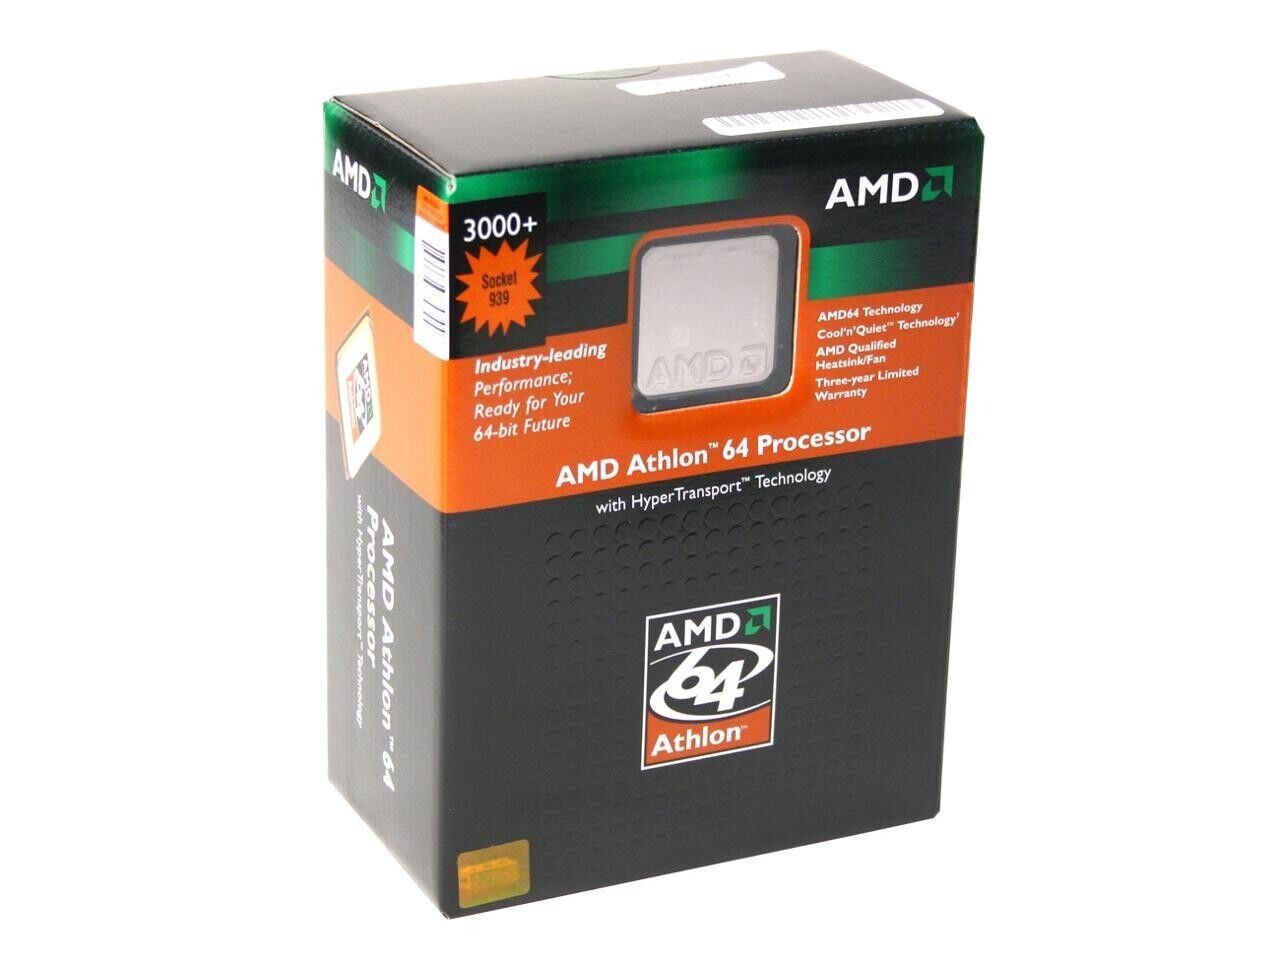 AMD Athlon 64 3000+ 2.0GHz 939 DDR400 1GB Geforce 7600 512MB 120GB 7200 SATA 1.5